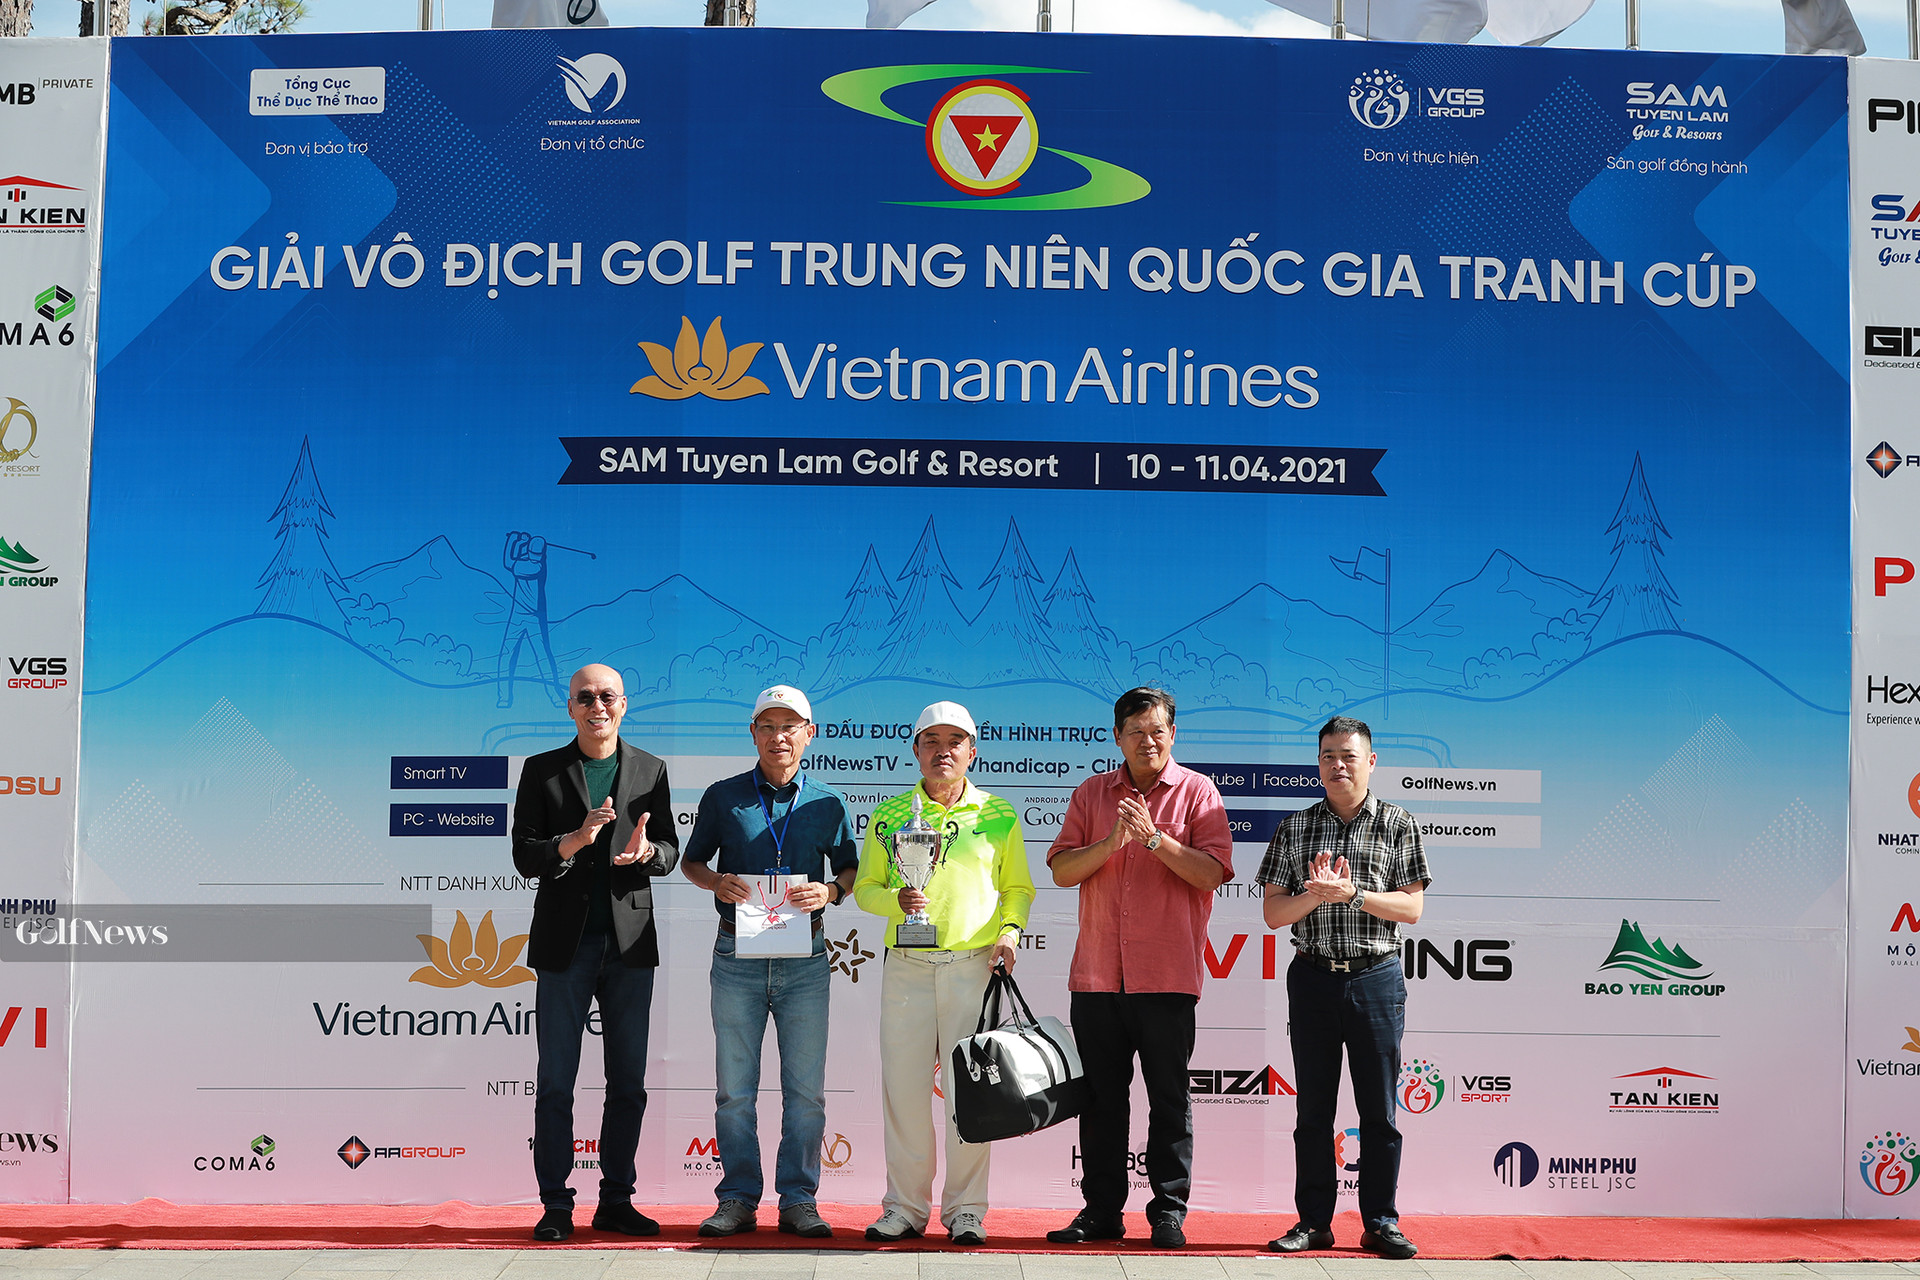 Kết quả chung cuộc giải Vô địch golf Trung niên Quốc gia tranh cúp Vietnam Airlines - Ảnh 4.